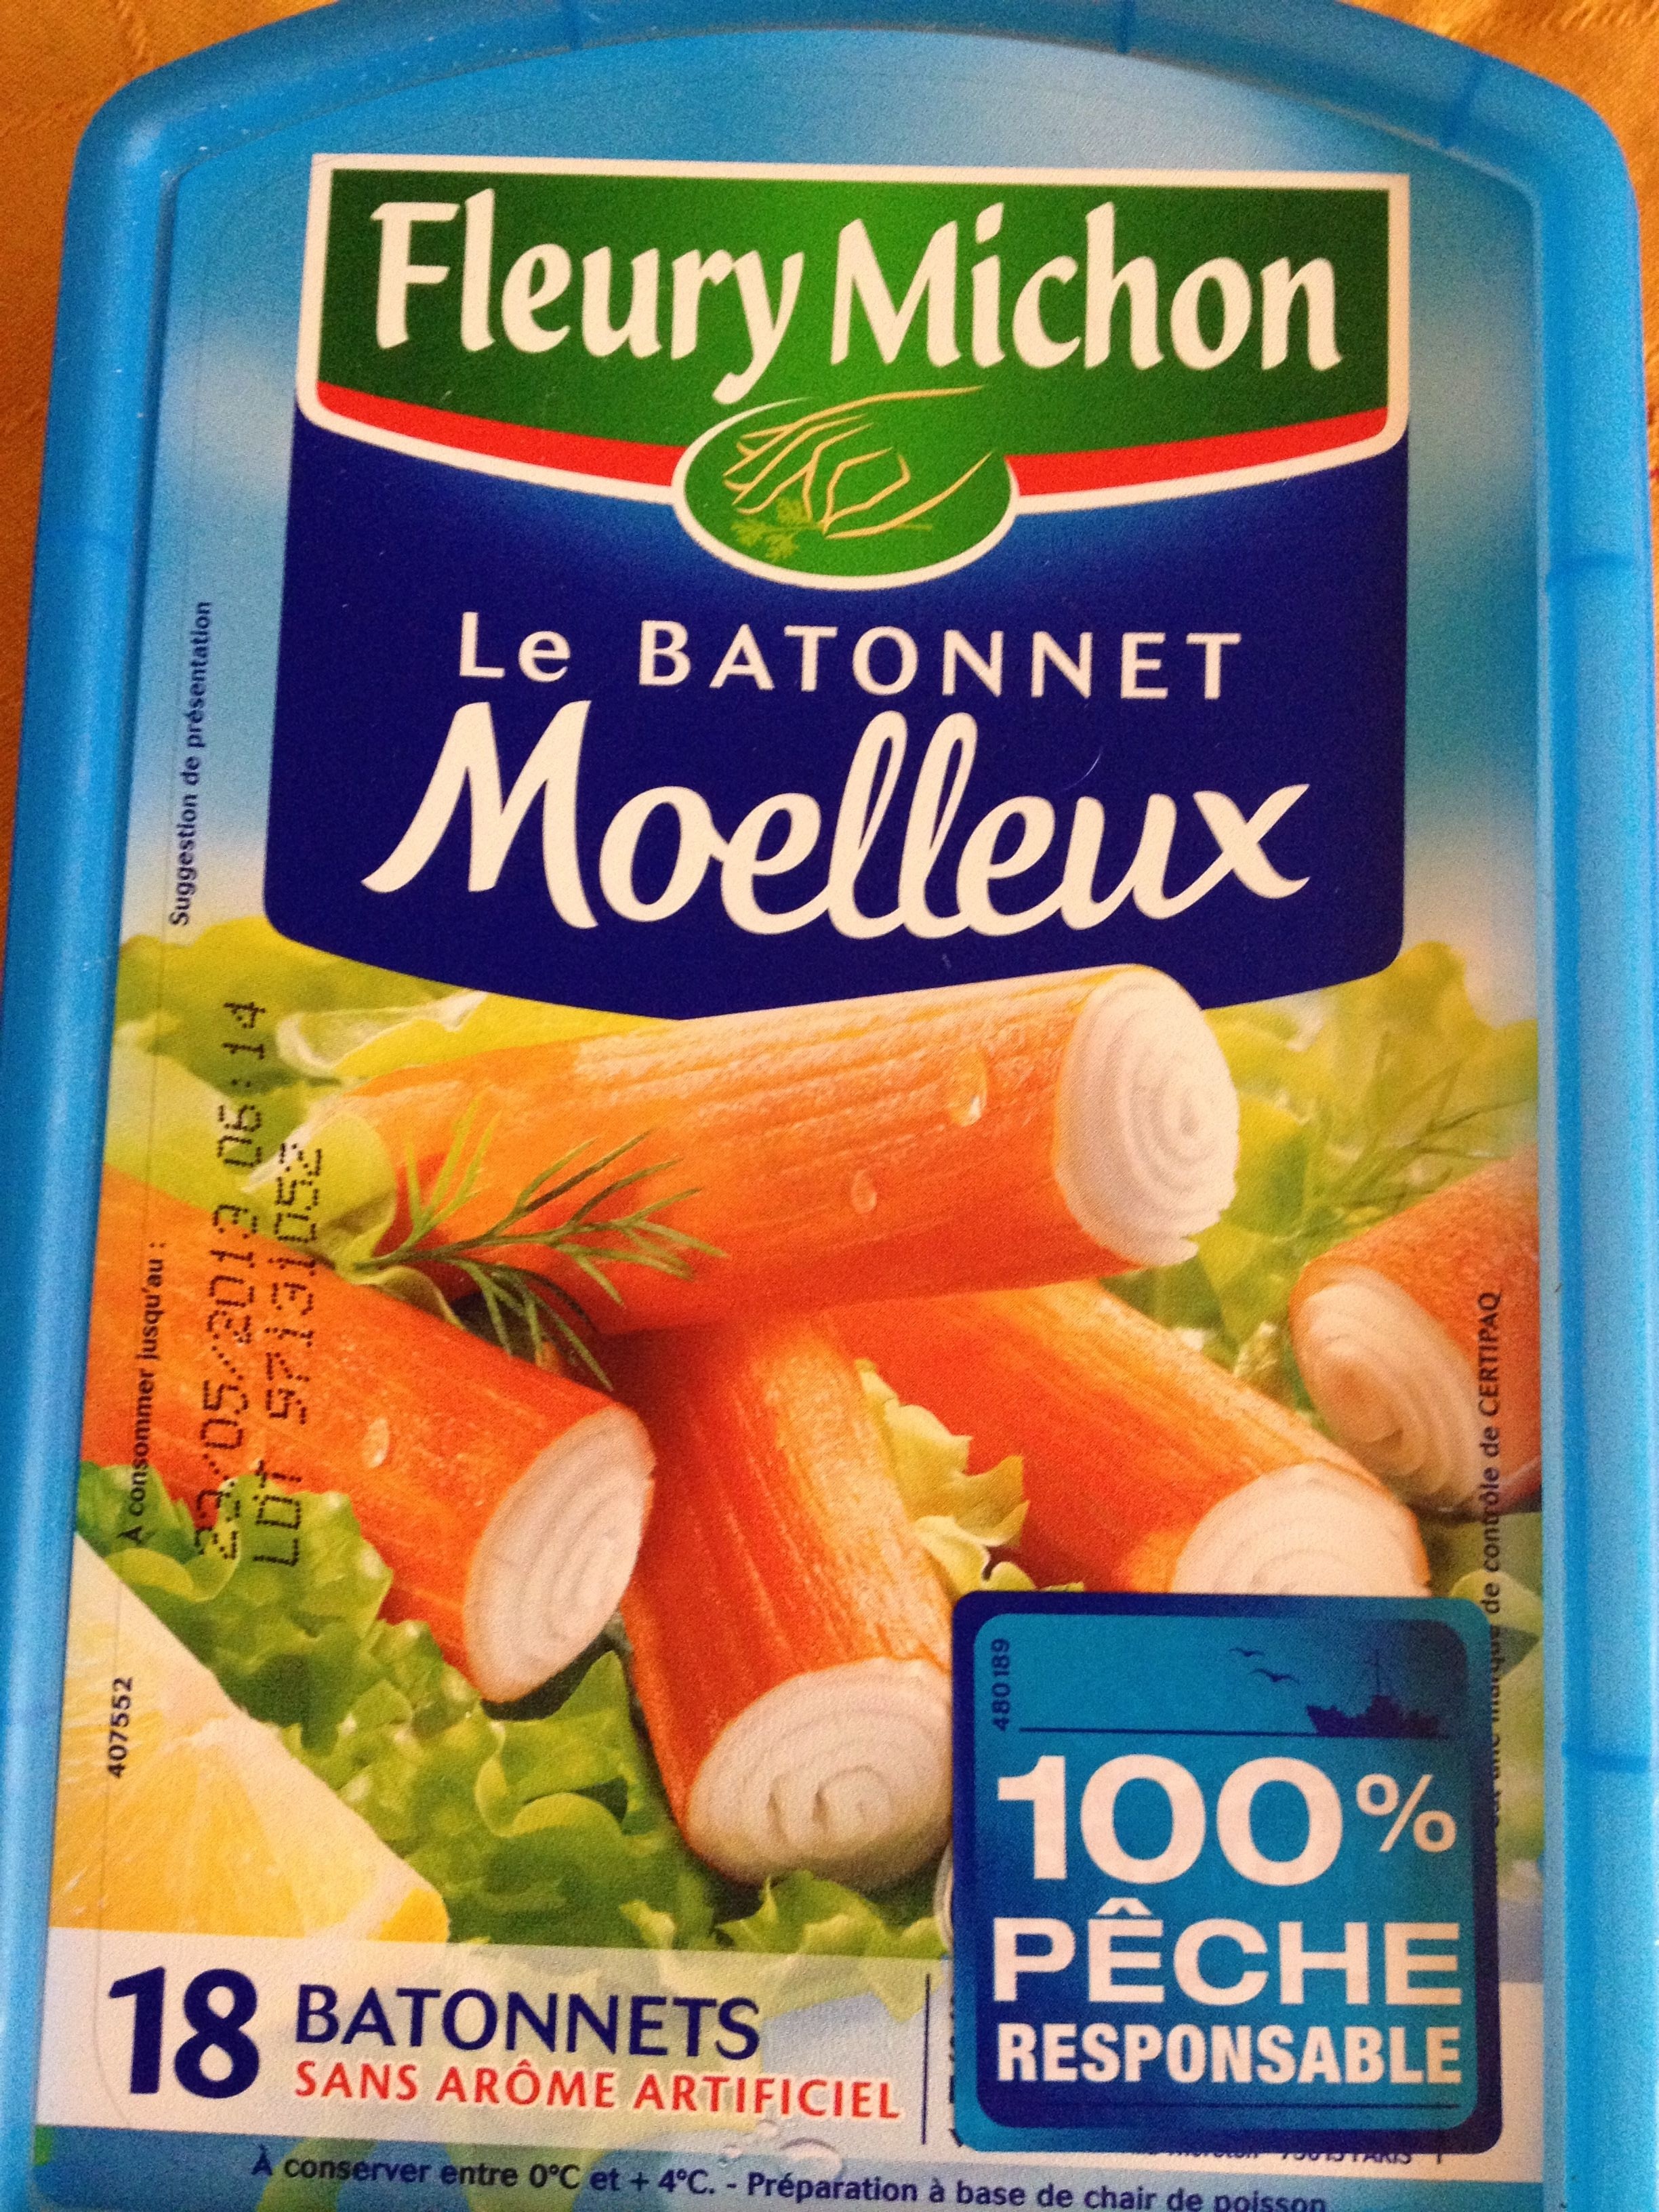 Le Bâtonnet Moelleux (18 Bâtonnets) - Product - fr